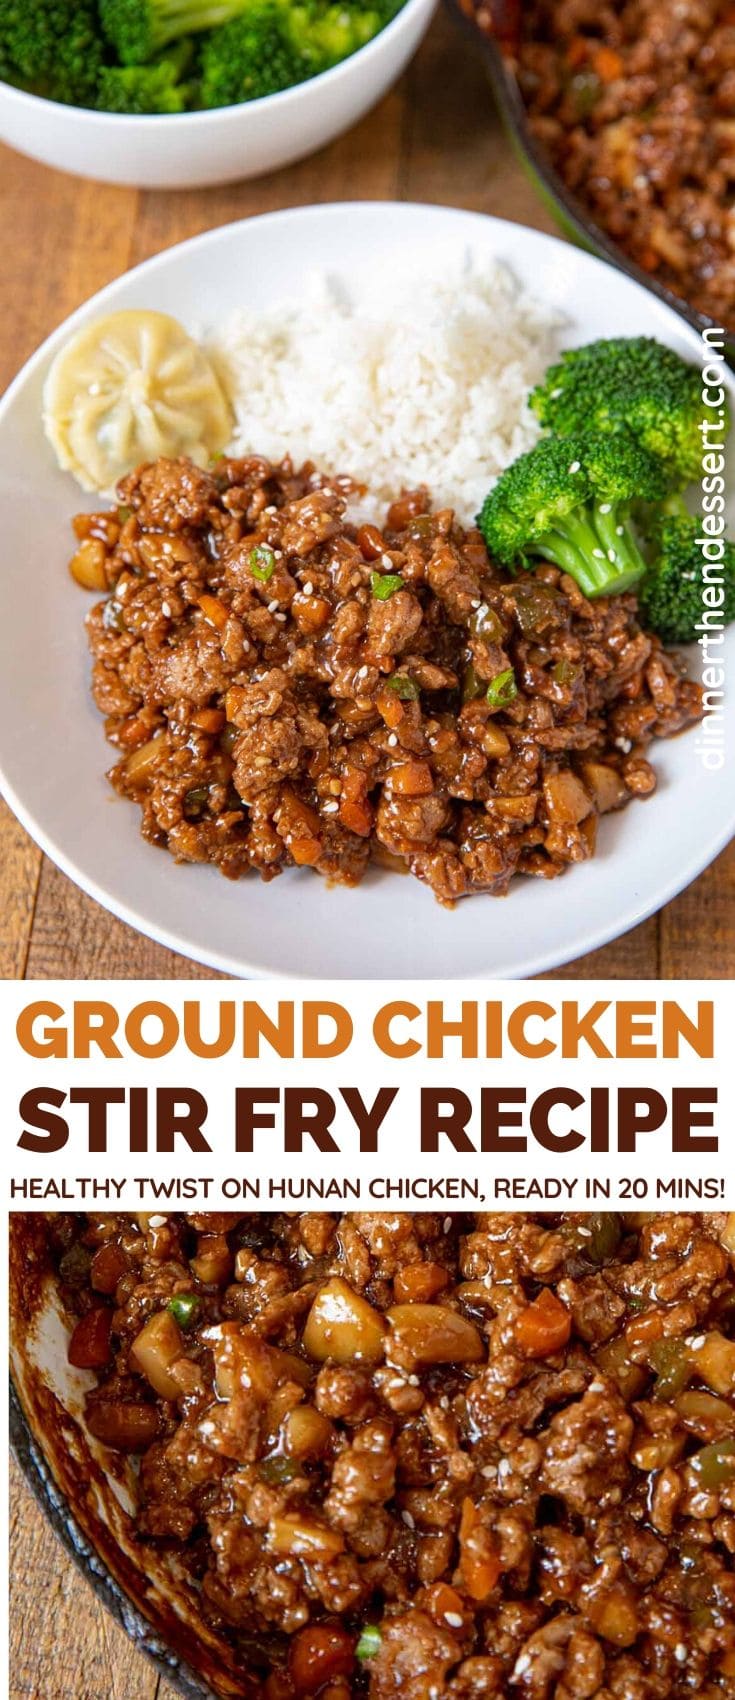 High Fiber Ground Chicken Recipe For Weight Loss - 10 5 Ingredient ...